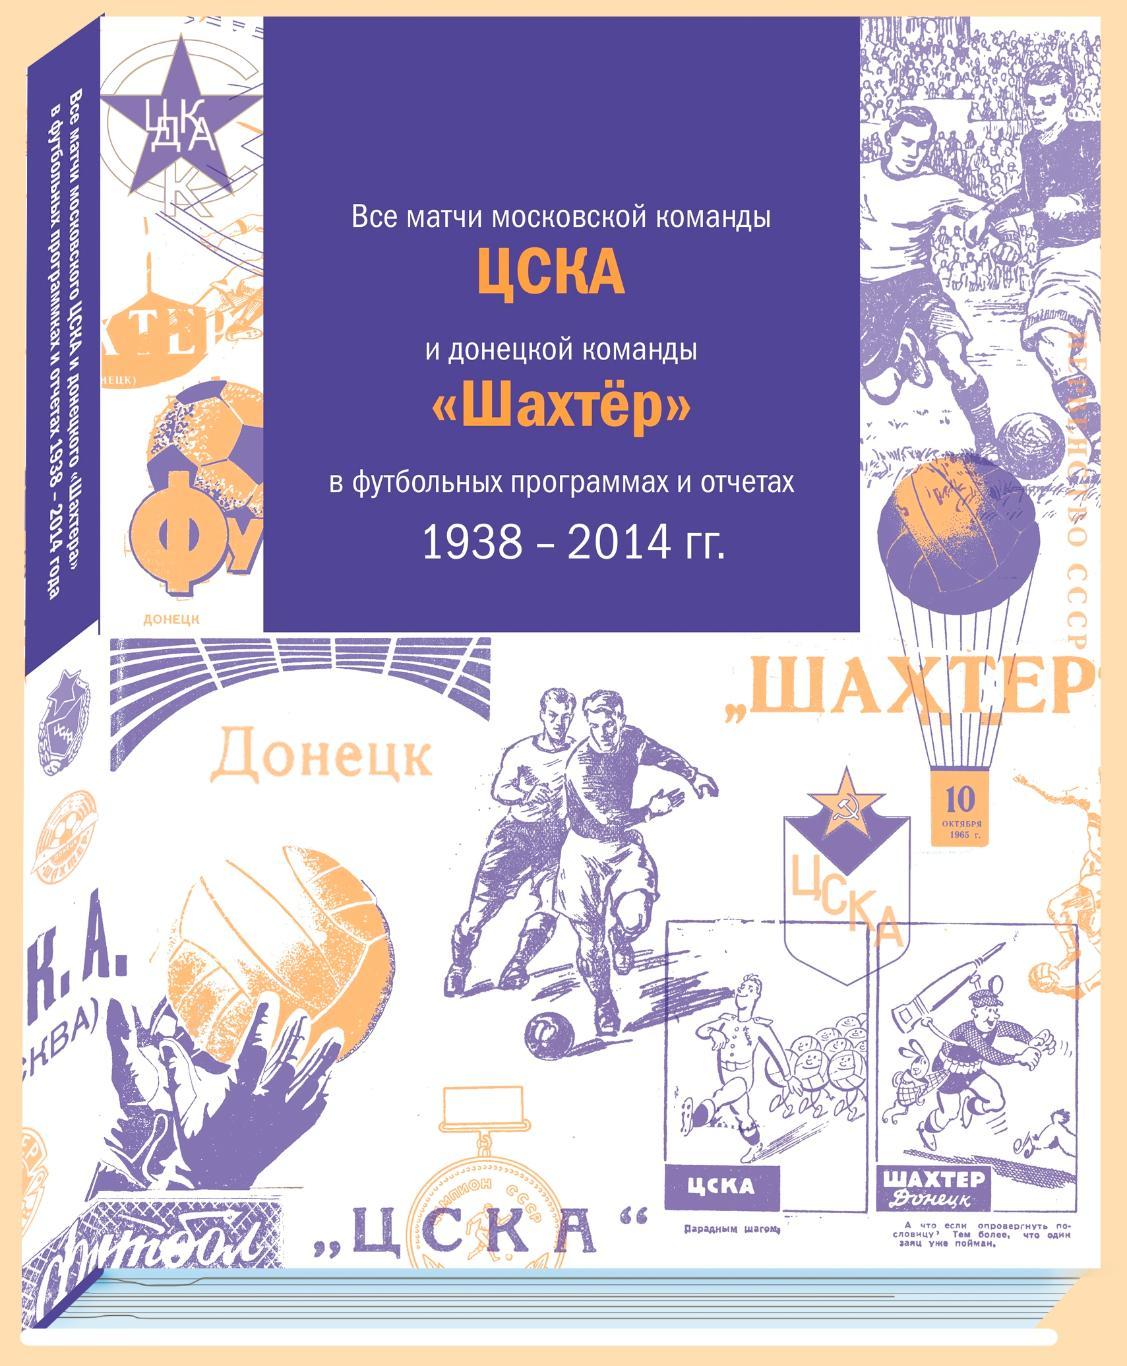 Все матчи команд ЦСКА и Шахтёр в футбольных программах и отчётах 1938 - 2014 гг.